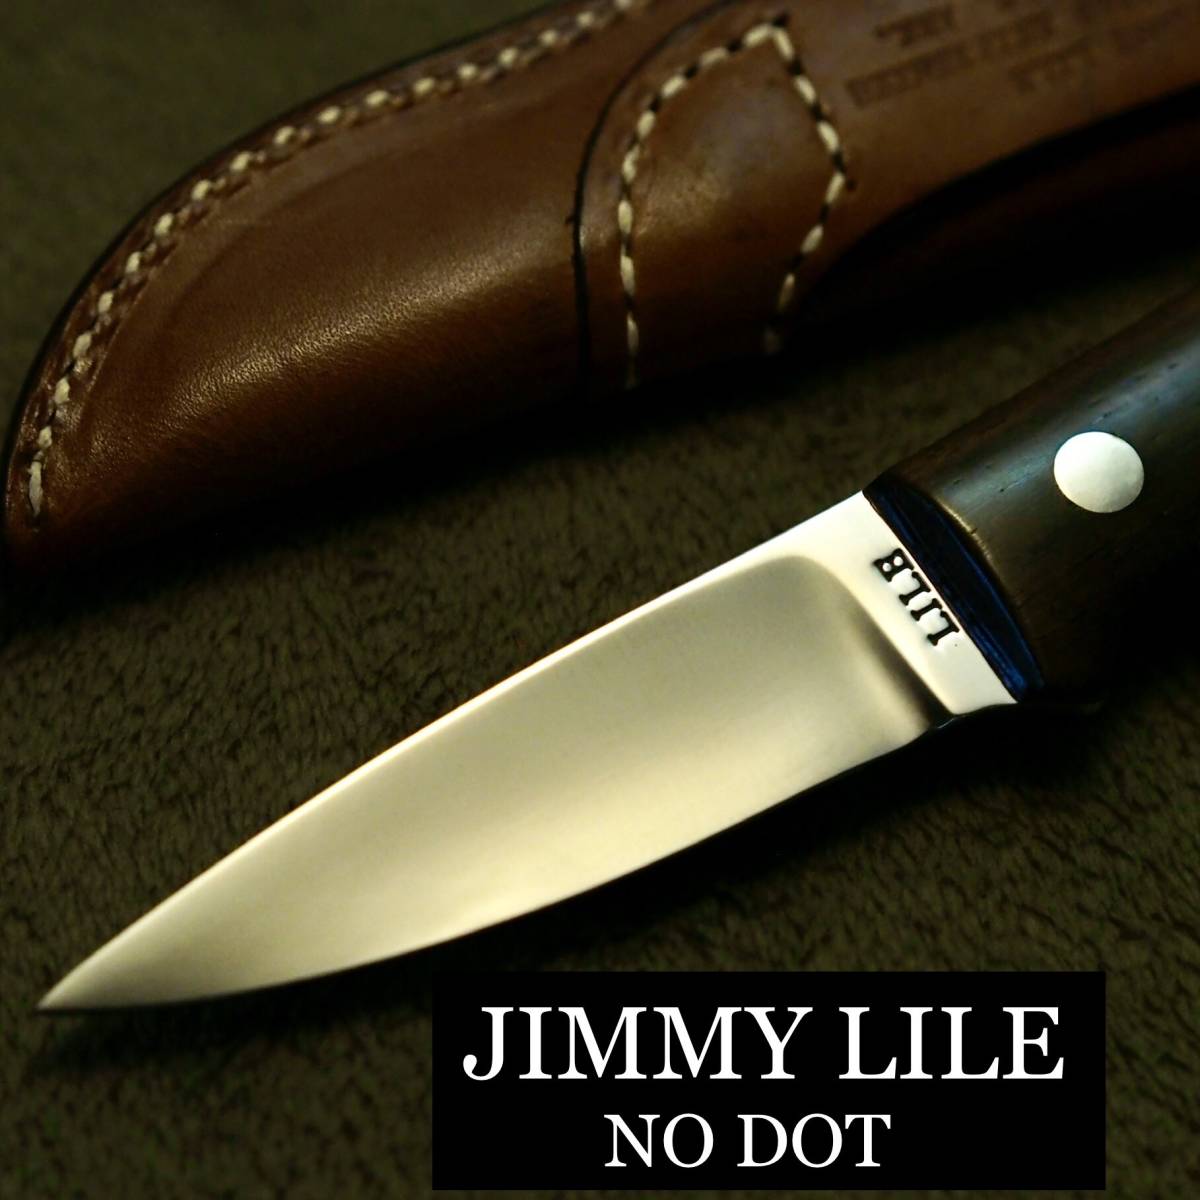 JIMMY LILE (NO DOT) L1 カスタムナイフ ジミーライル 狩猟 キャンプ 野営 ワイン